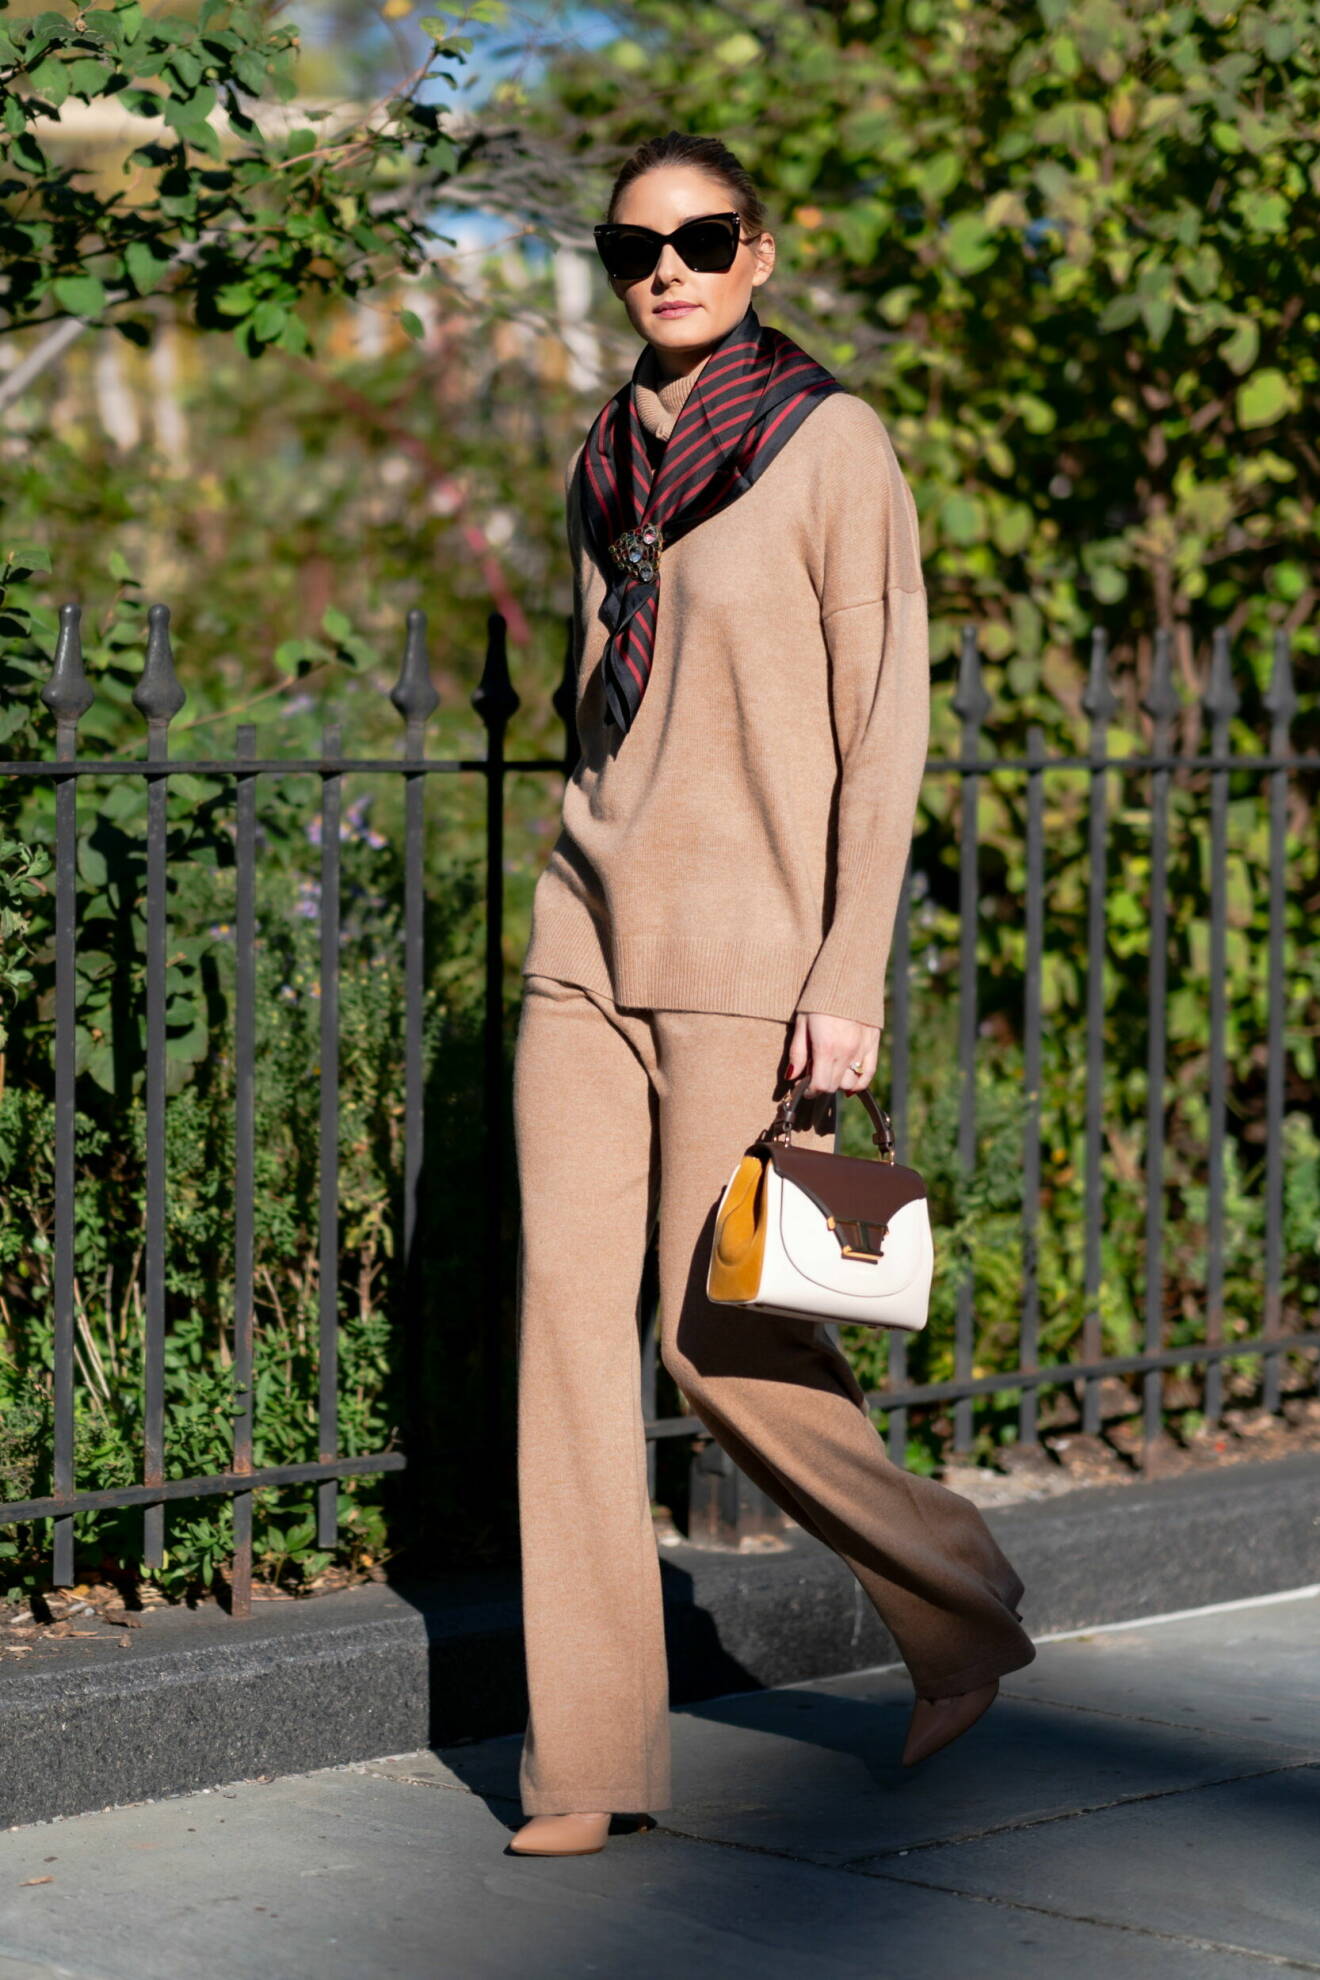 Stilsäkra Olivia Palermo i klassisk outfit med scarf